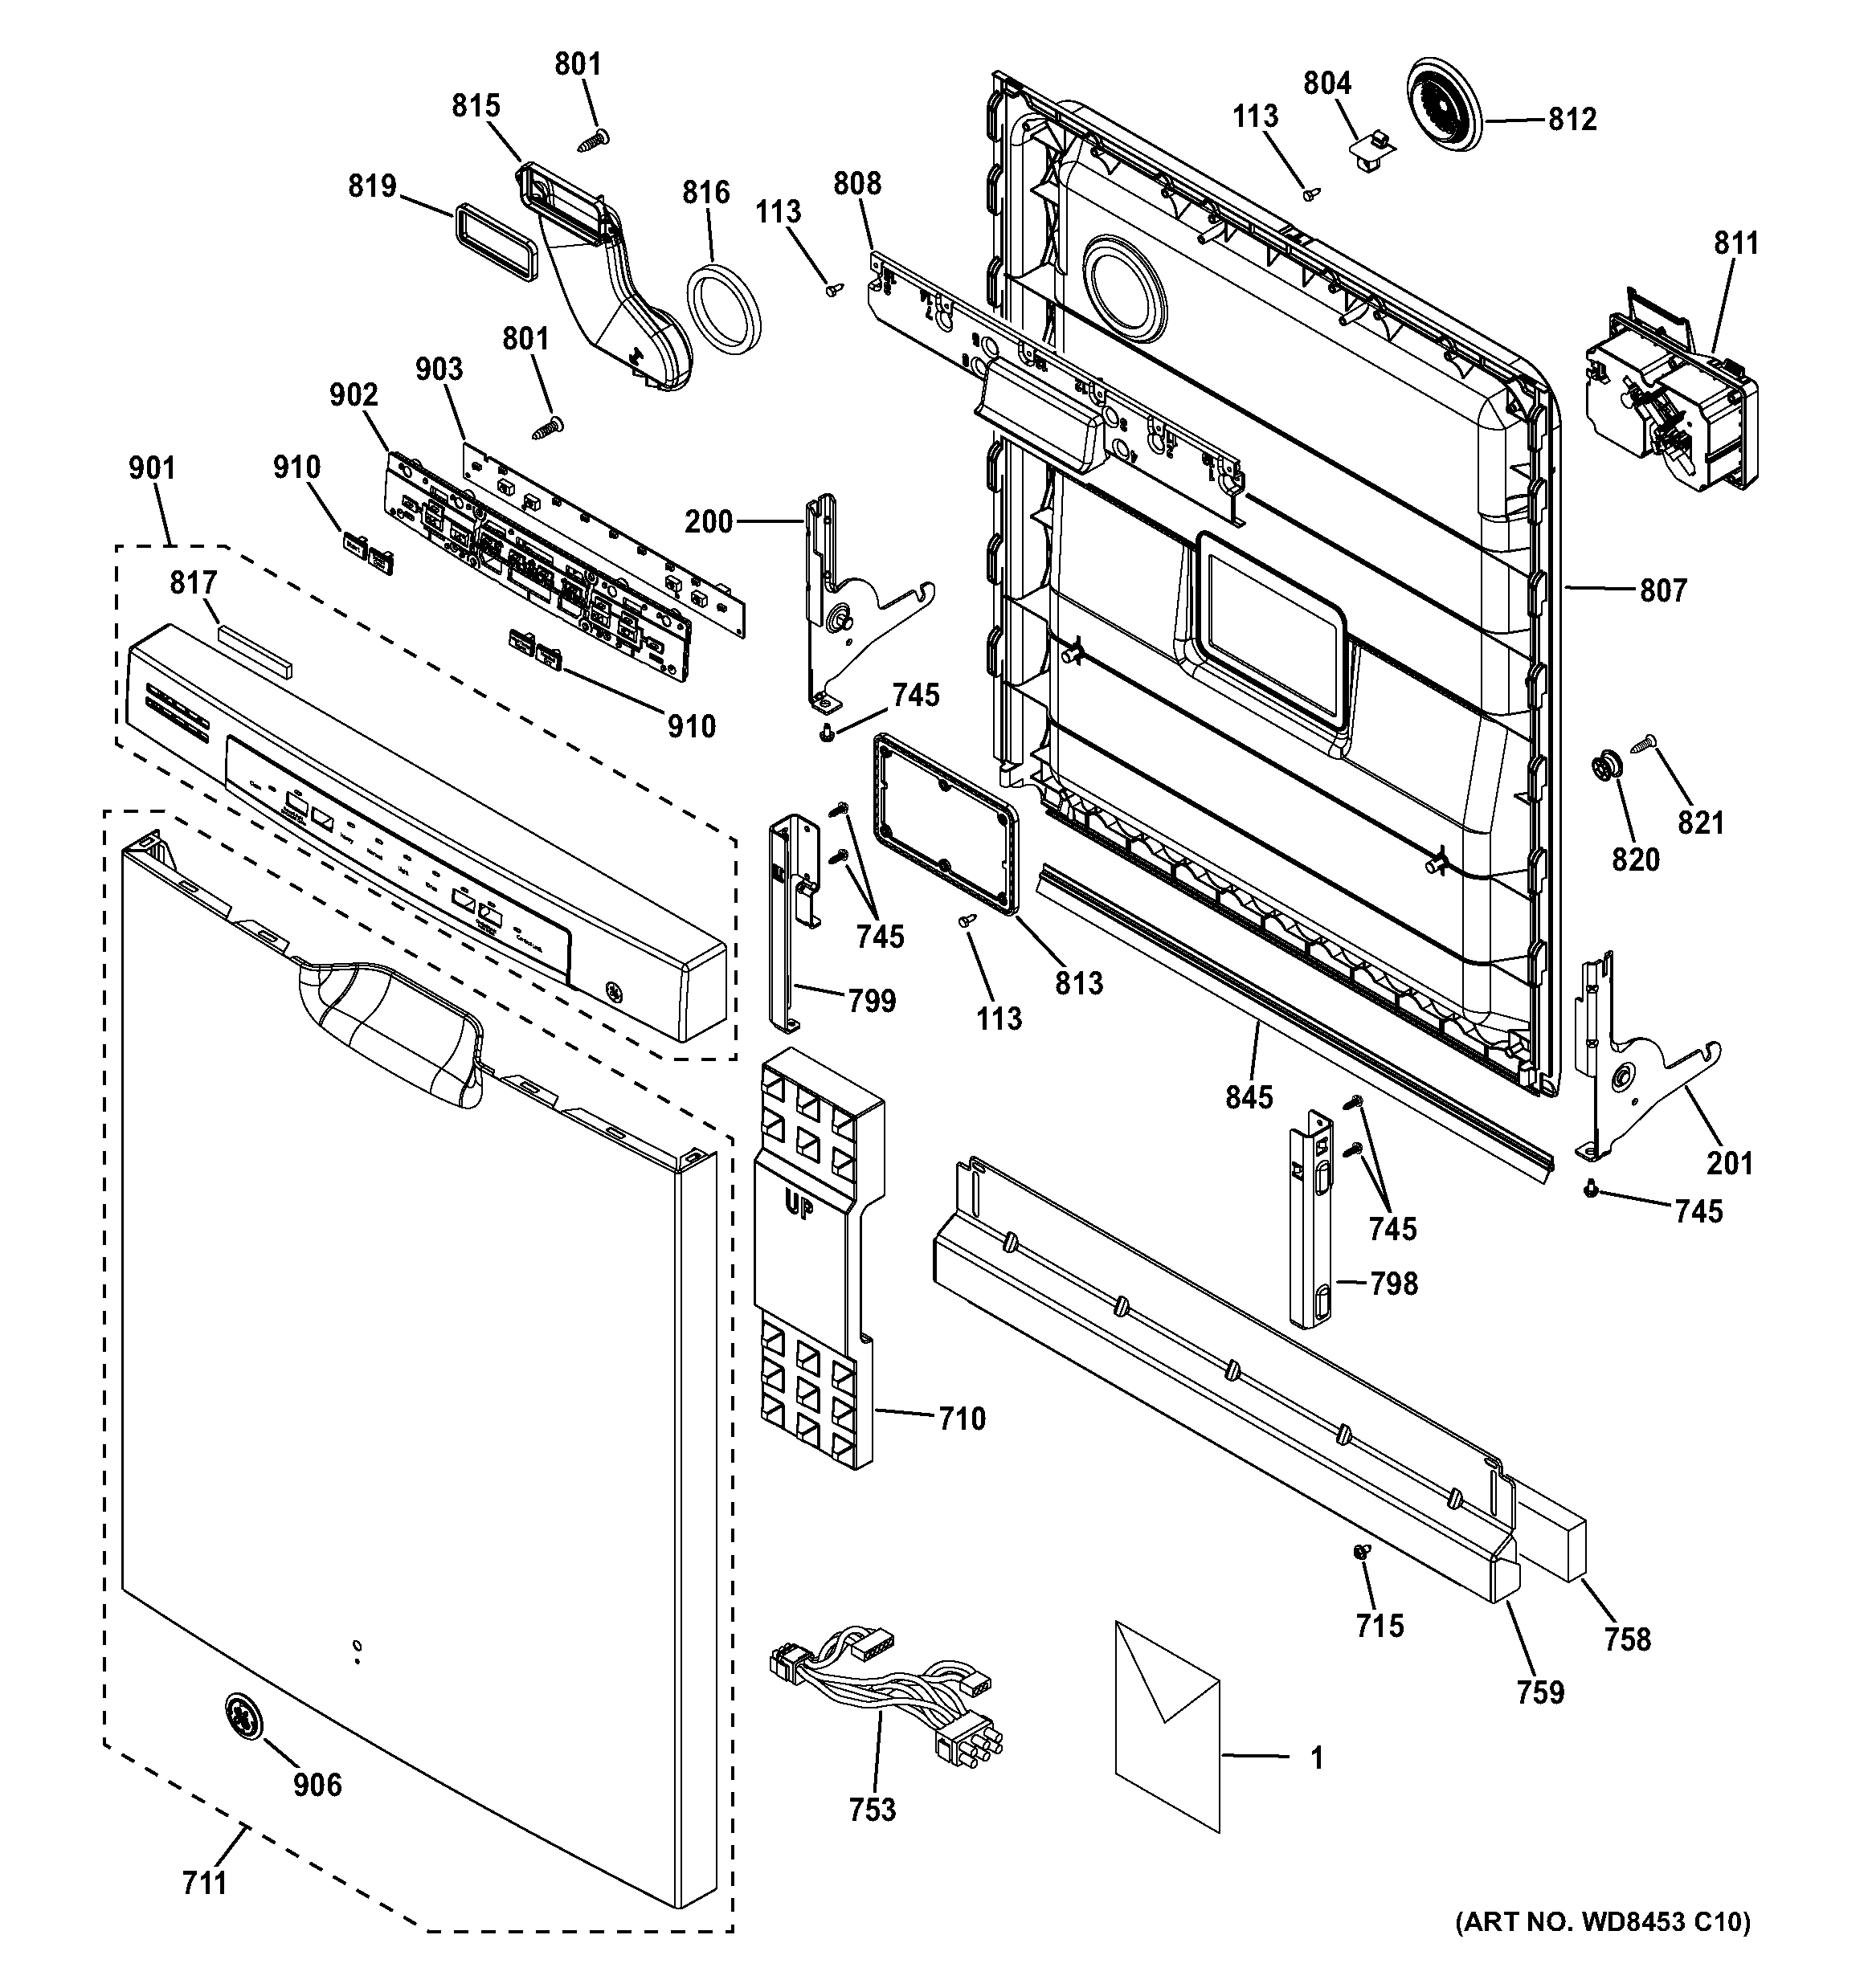 33 Ge Dishwasher Diagram Of Parts - Free Wiring Diagram Source